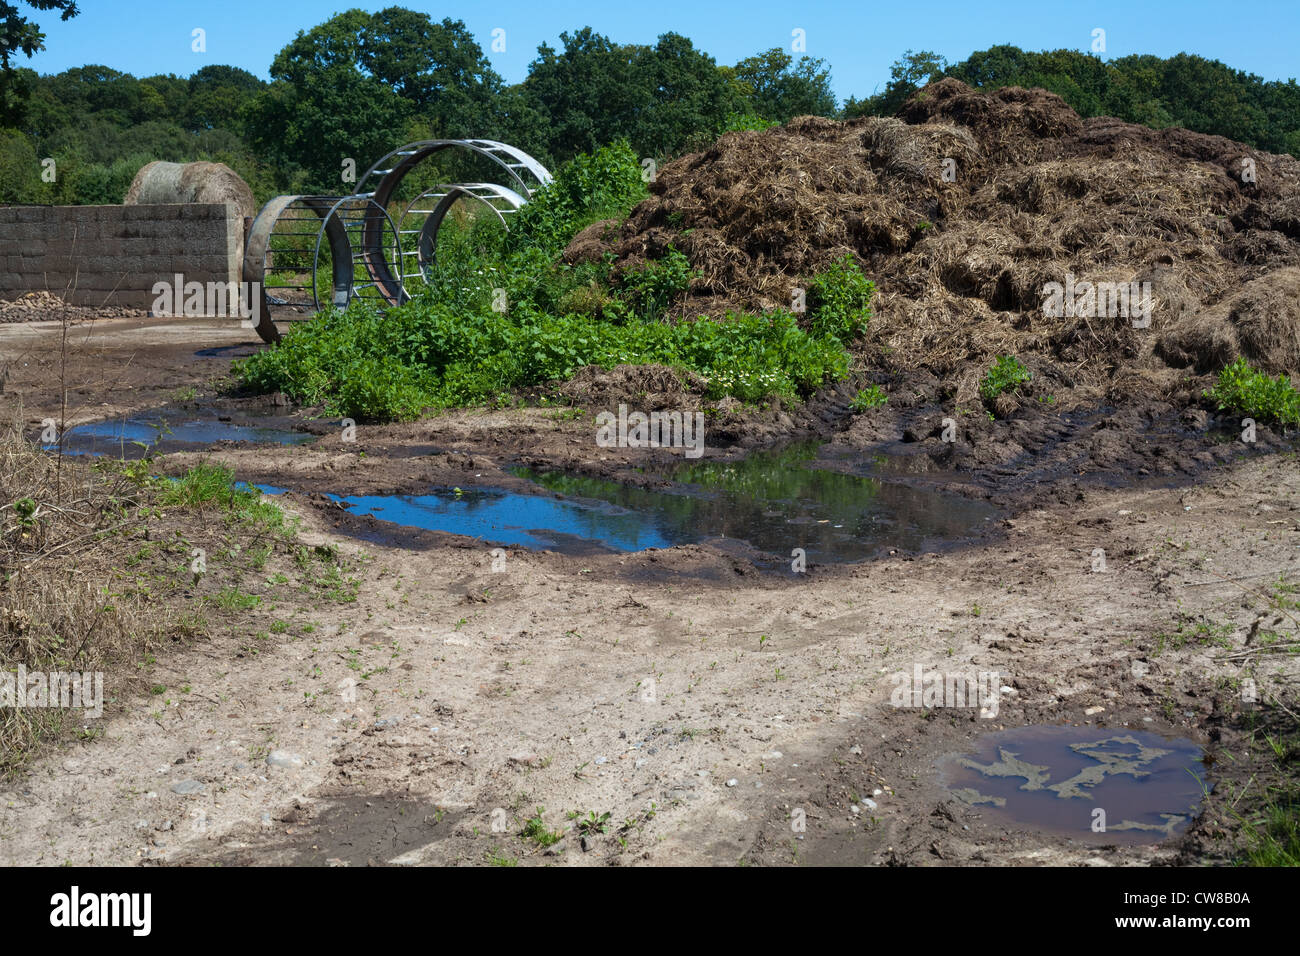 Verschmutzung der Entwässerungsgraben. Kumulierte Rindergülle von Nutztieren, Sickerschacht und Überlauf erreichbar gespeichert. Stockfoto